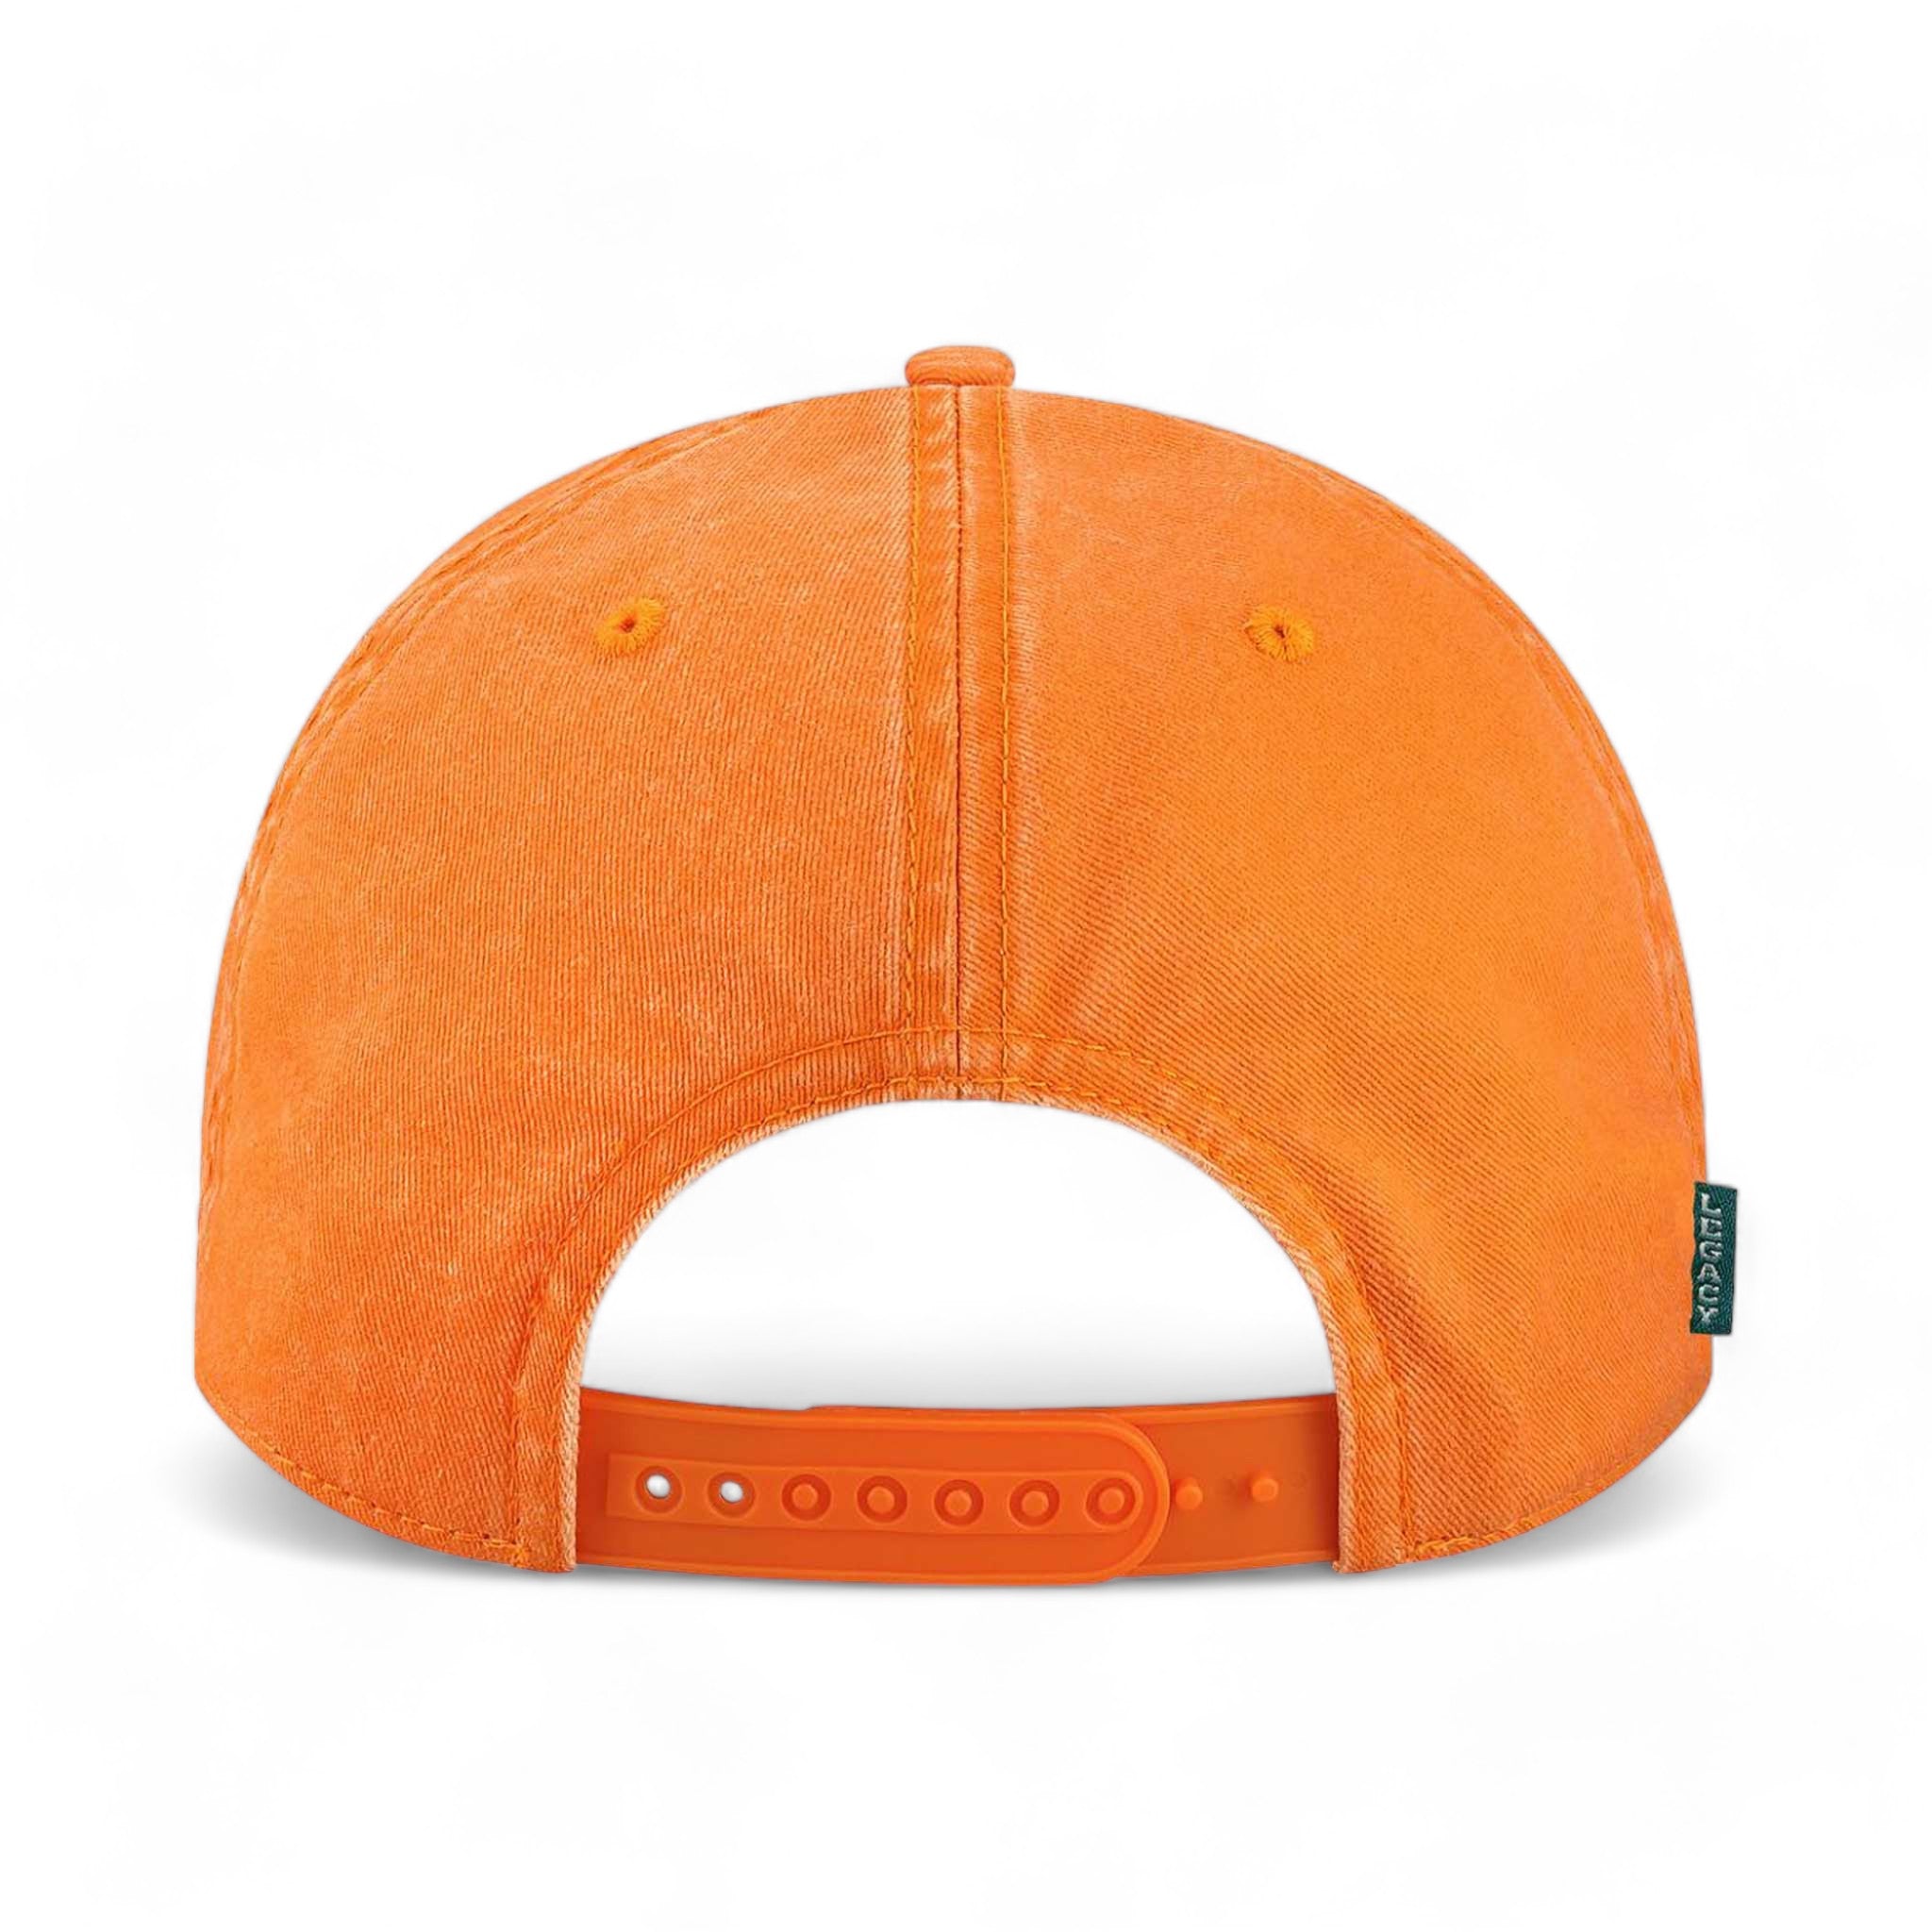 Back view of LEGACY SKULLY custom hat in tangerine orange